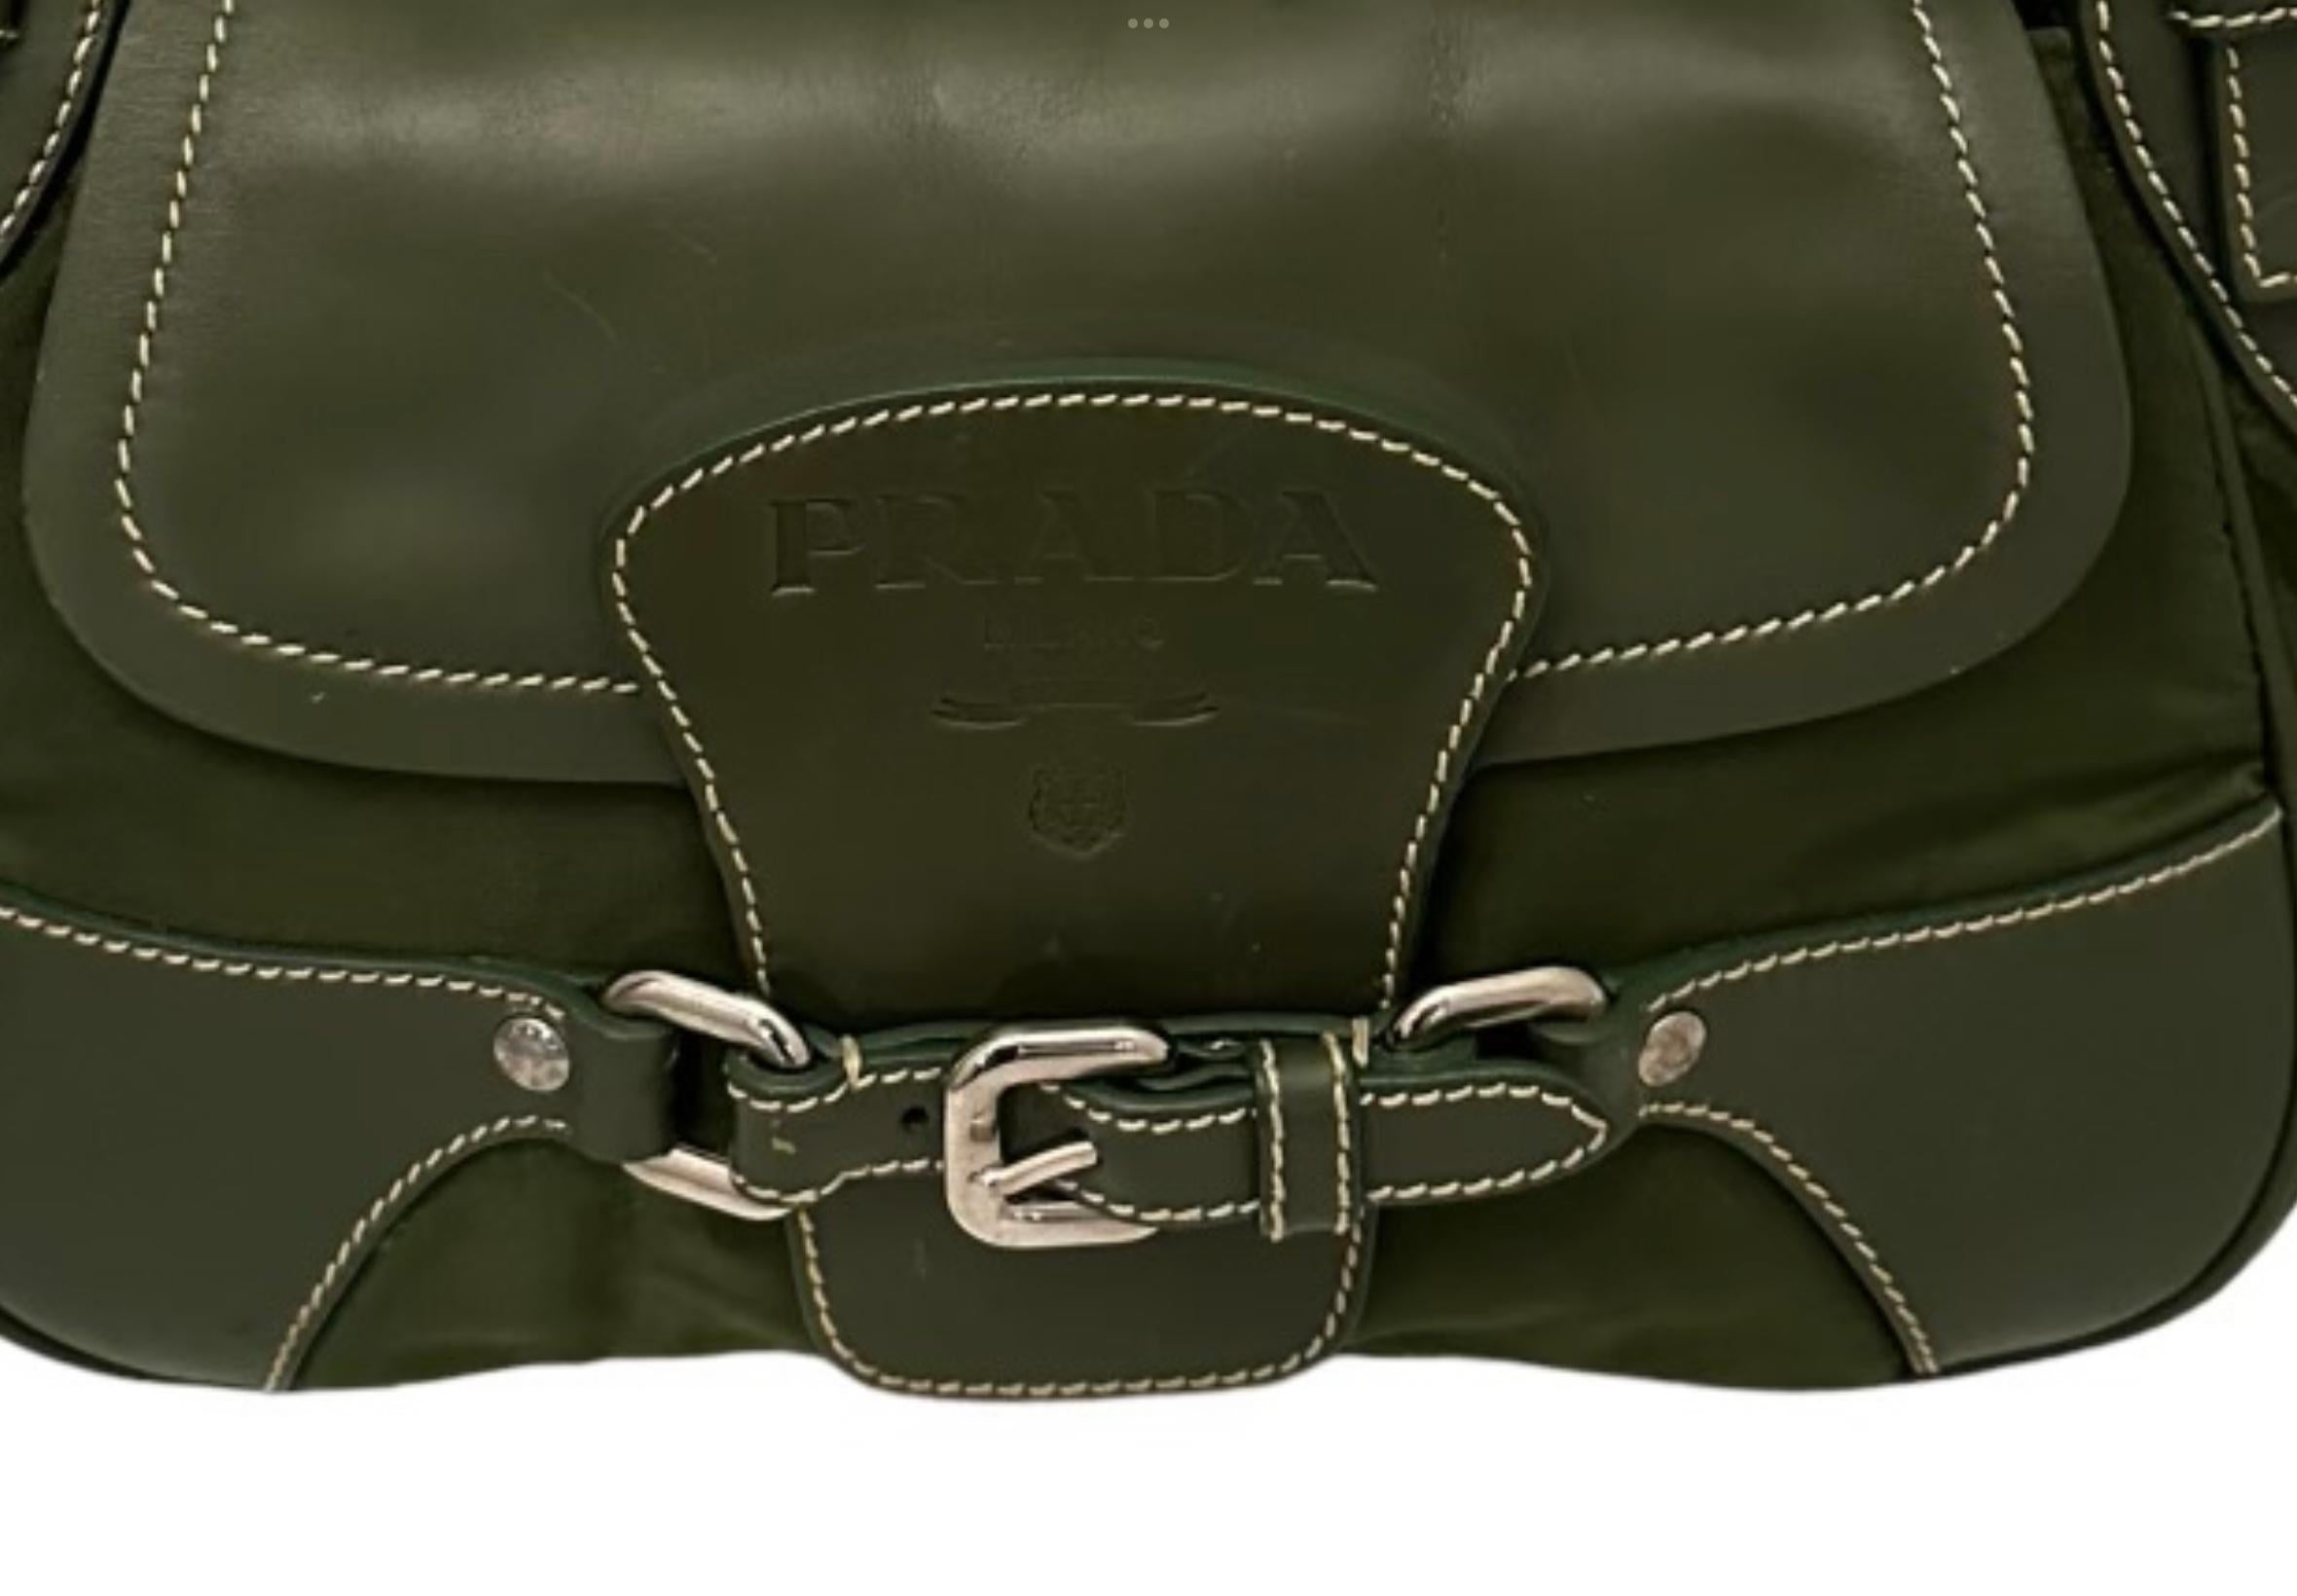 Prada Olive Strap Pocket Canvas Leather Bag 1